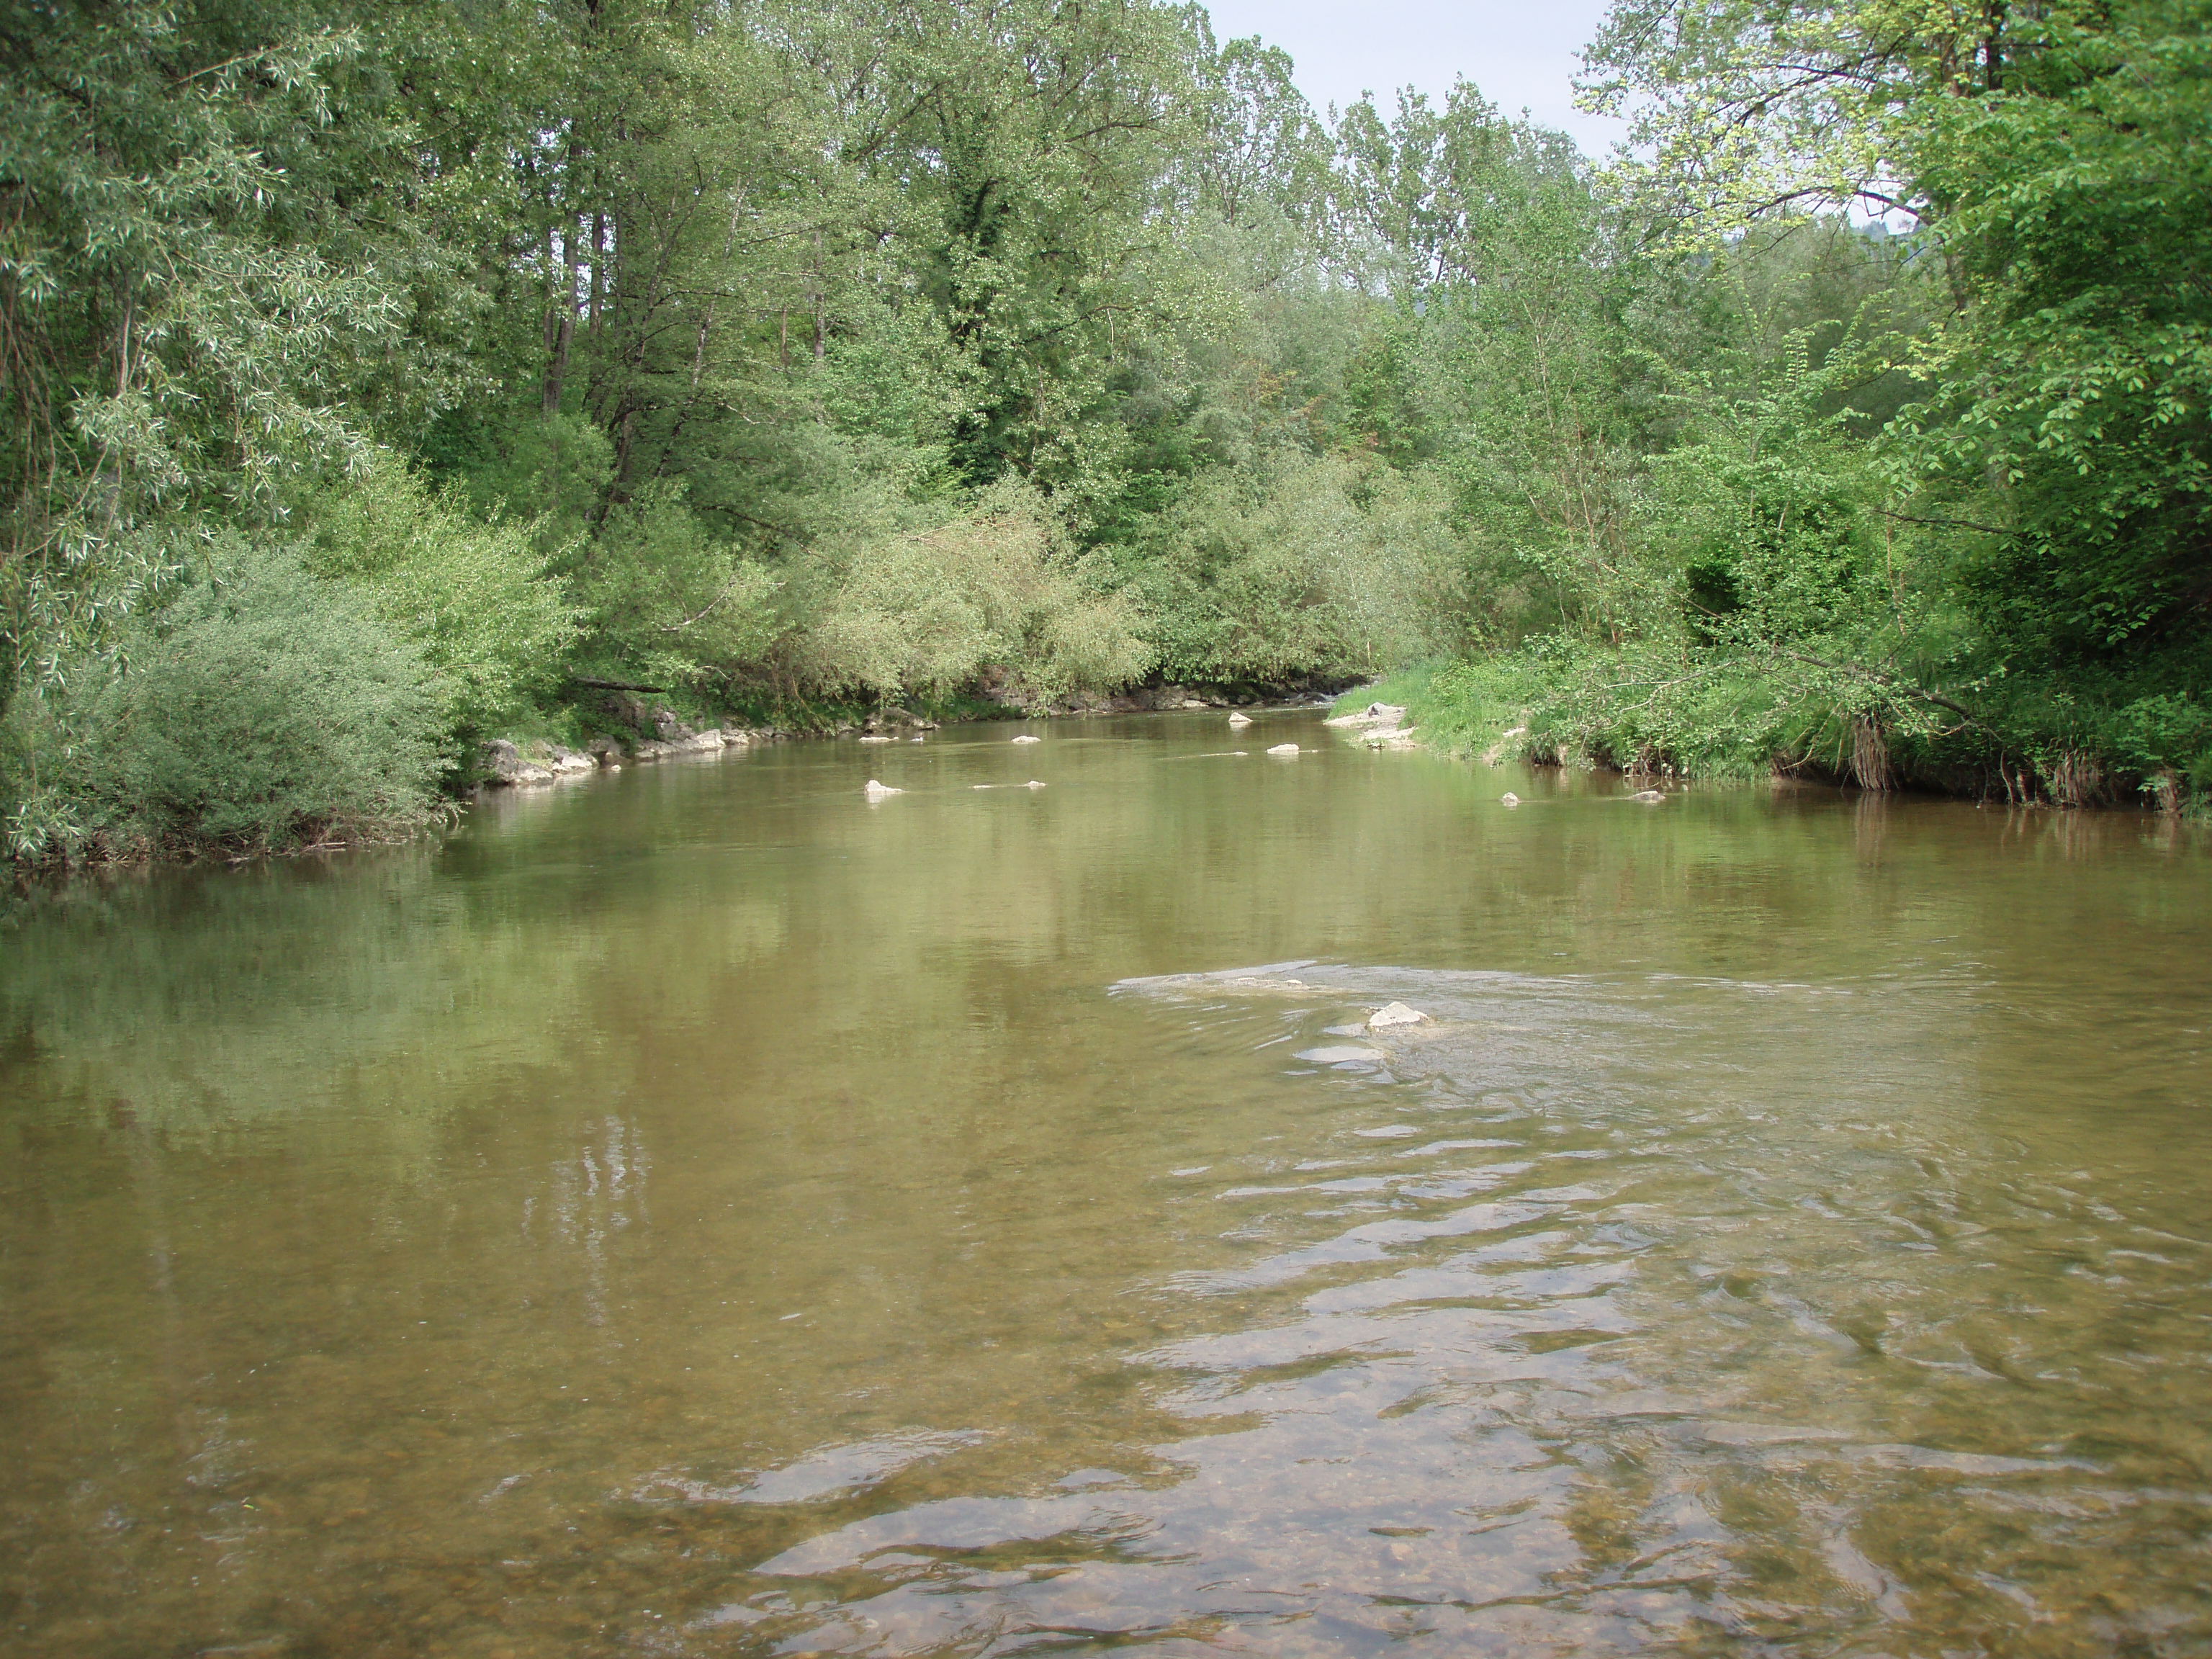 Sehr breiter und sehr ruhiger Fluss mit hohen, grünen Bäumen am Ufer.